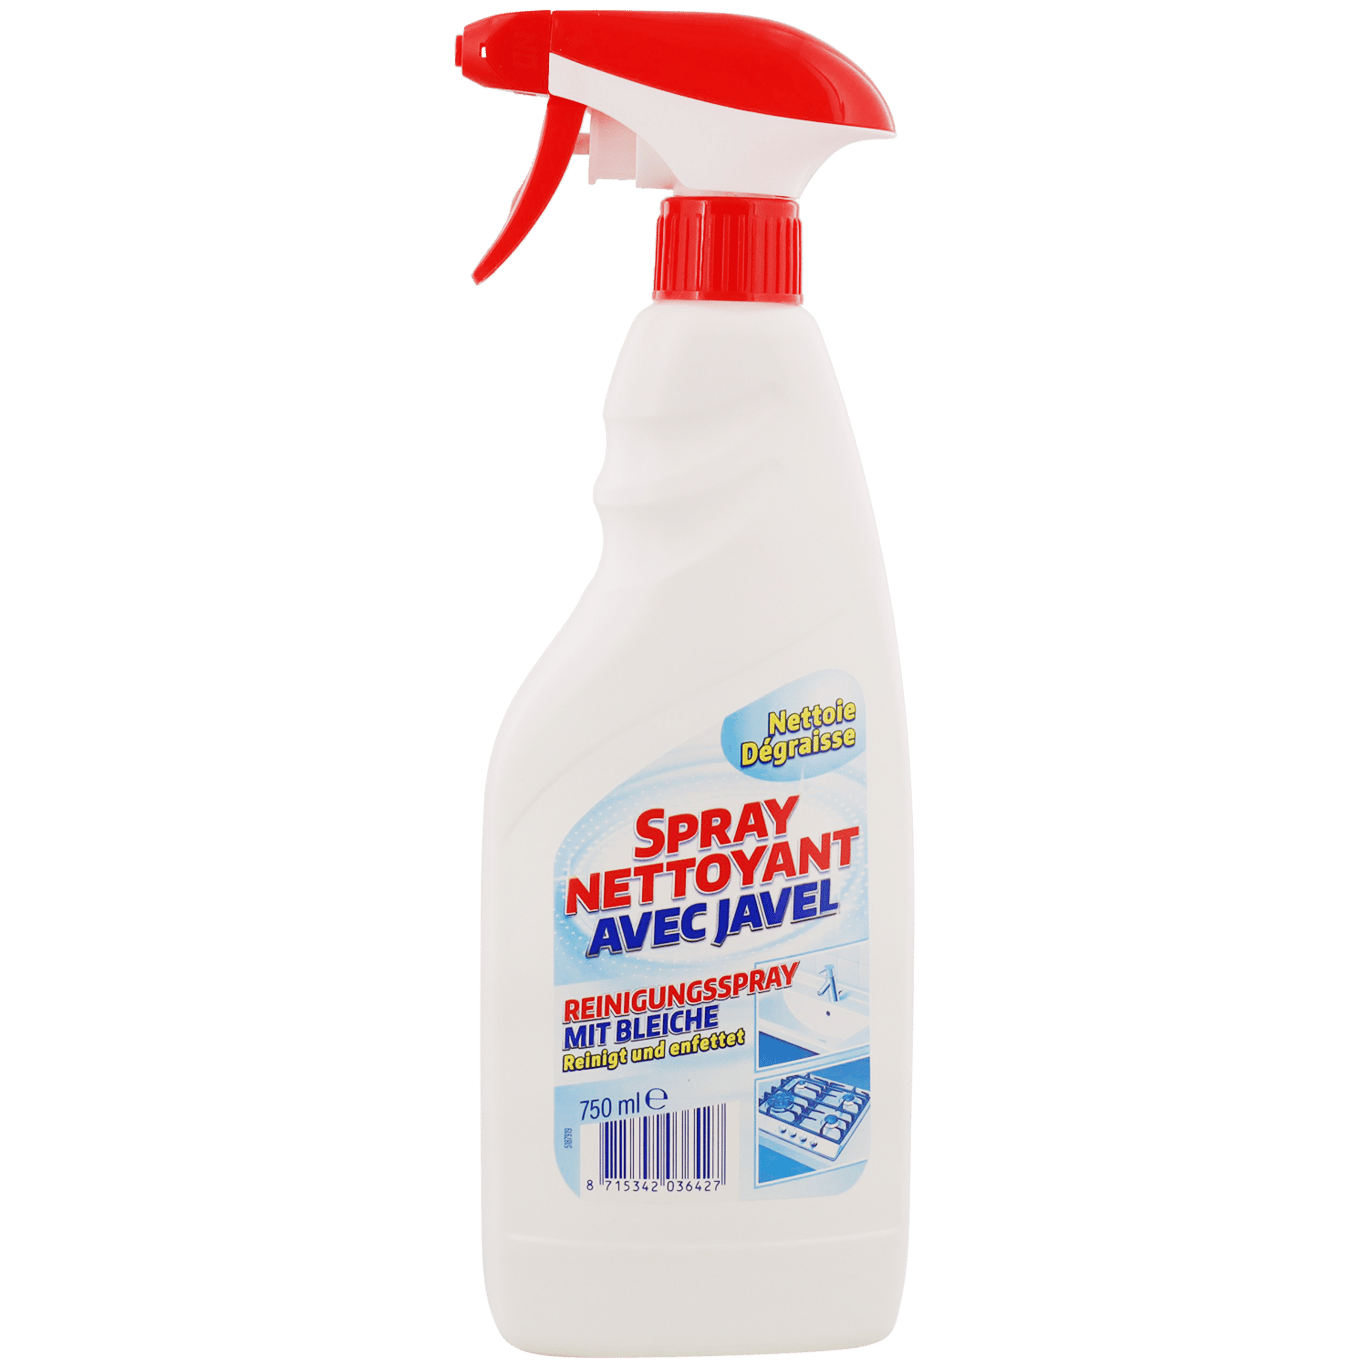 Spray nettoyant